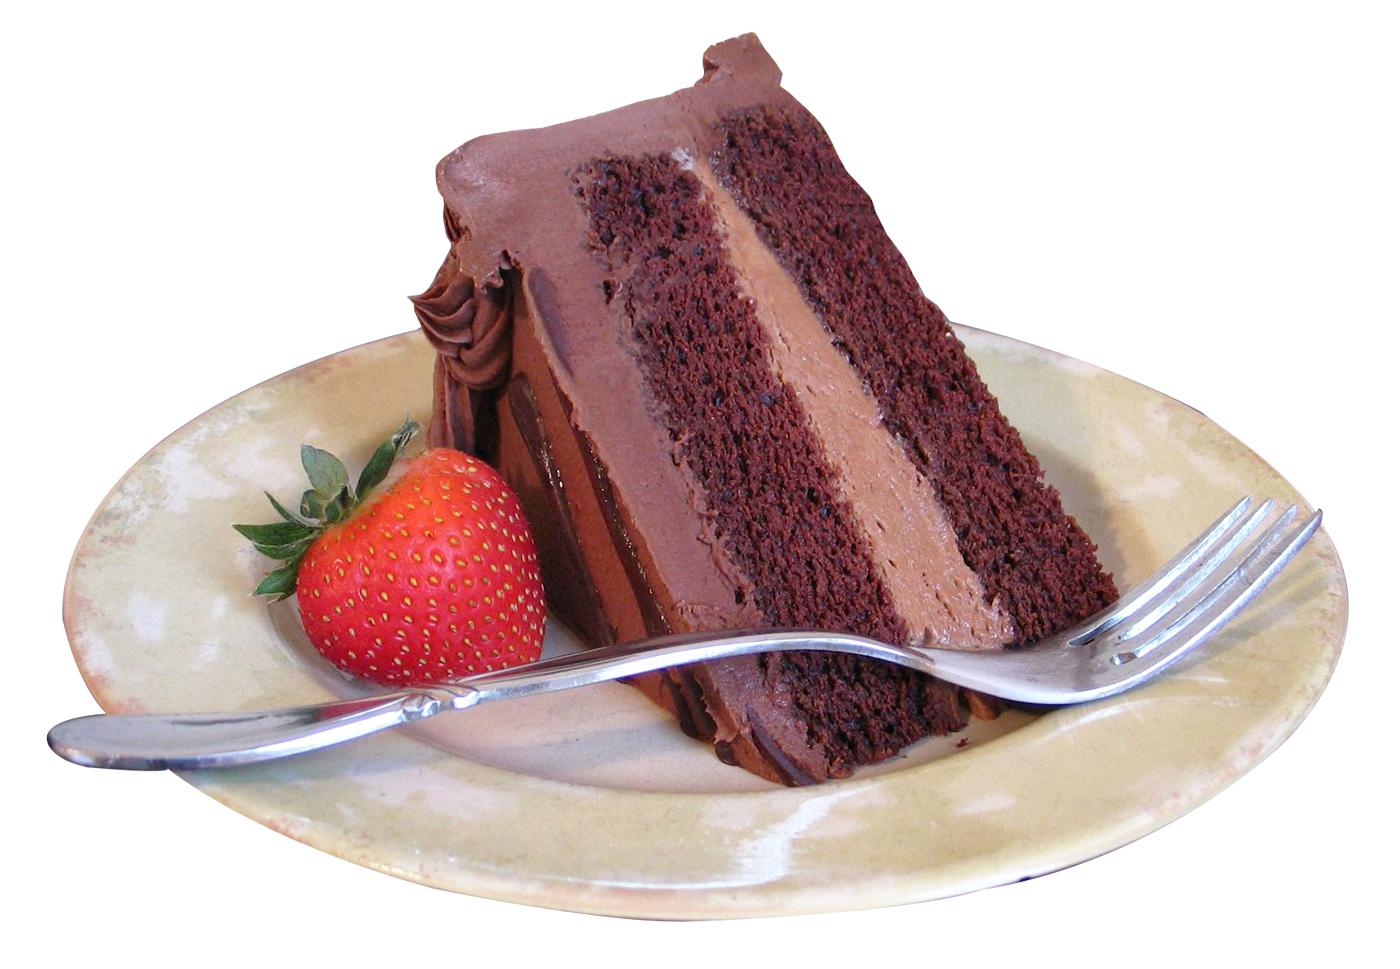 Black Forest cake slice